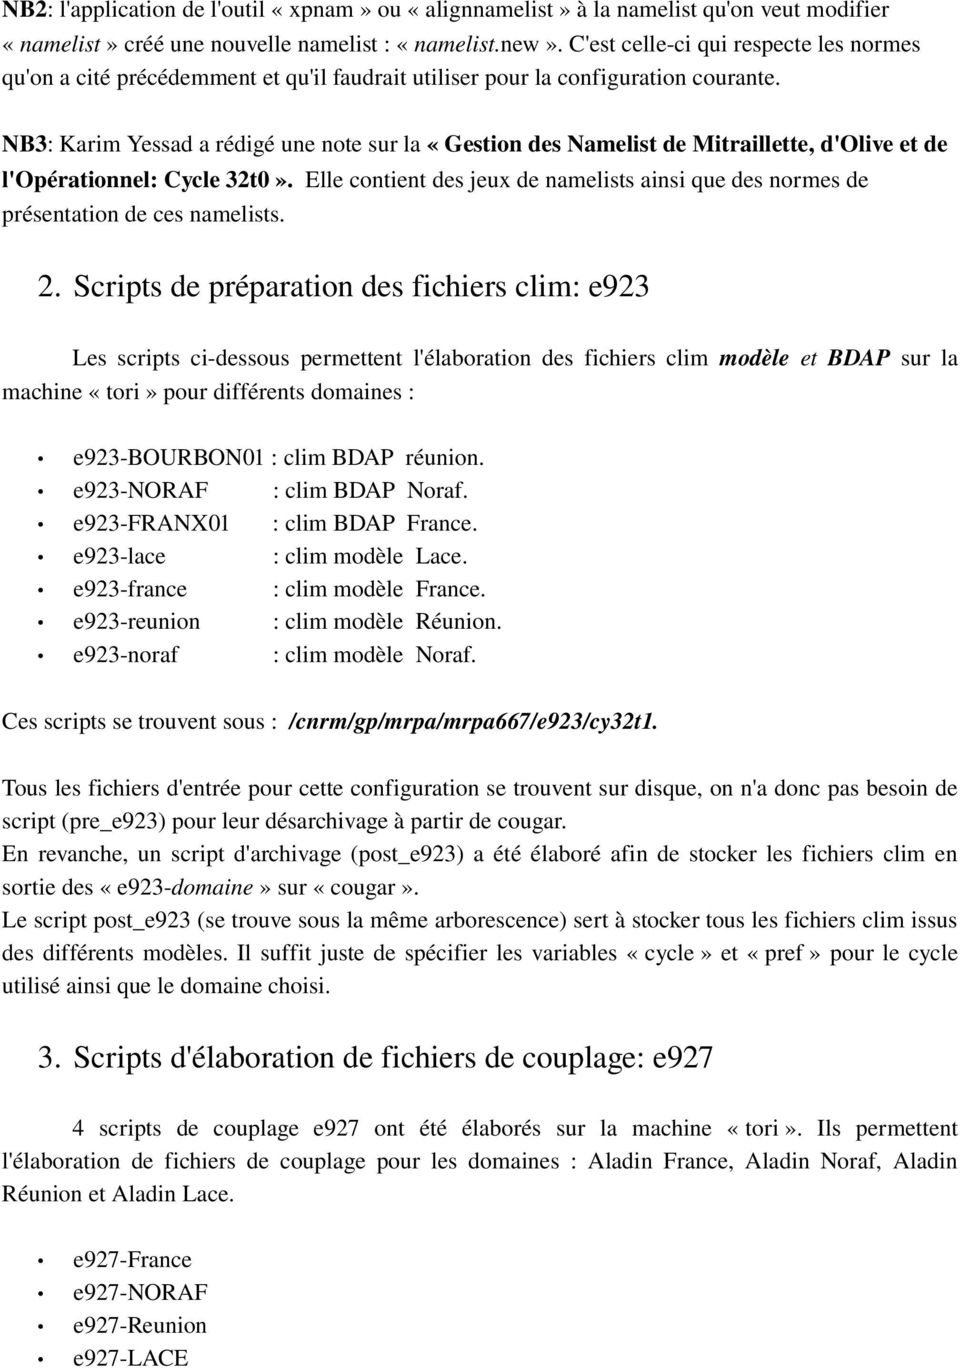 NB3: Karim Yessad a rédigé une note sur la «Gestion des Namelist de Mitraillette, d'olive et de l'opérationnel: Cycle 32t0».